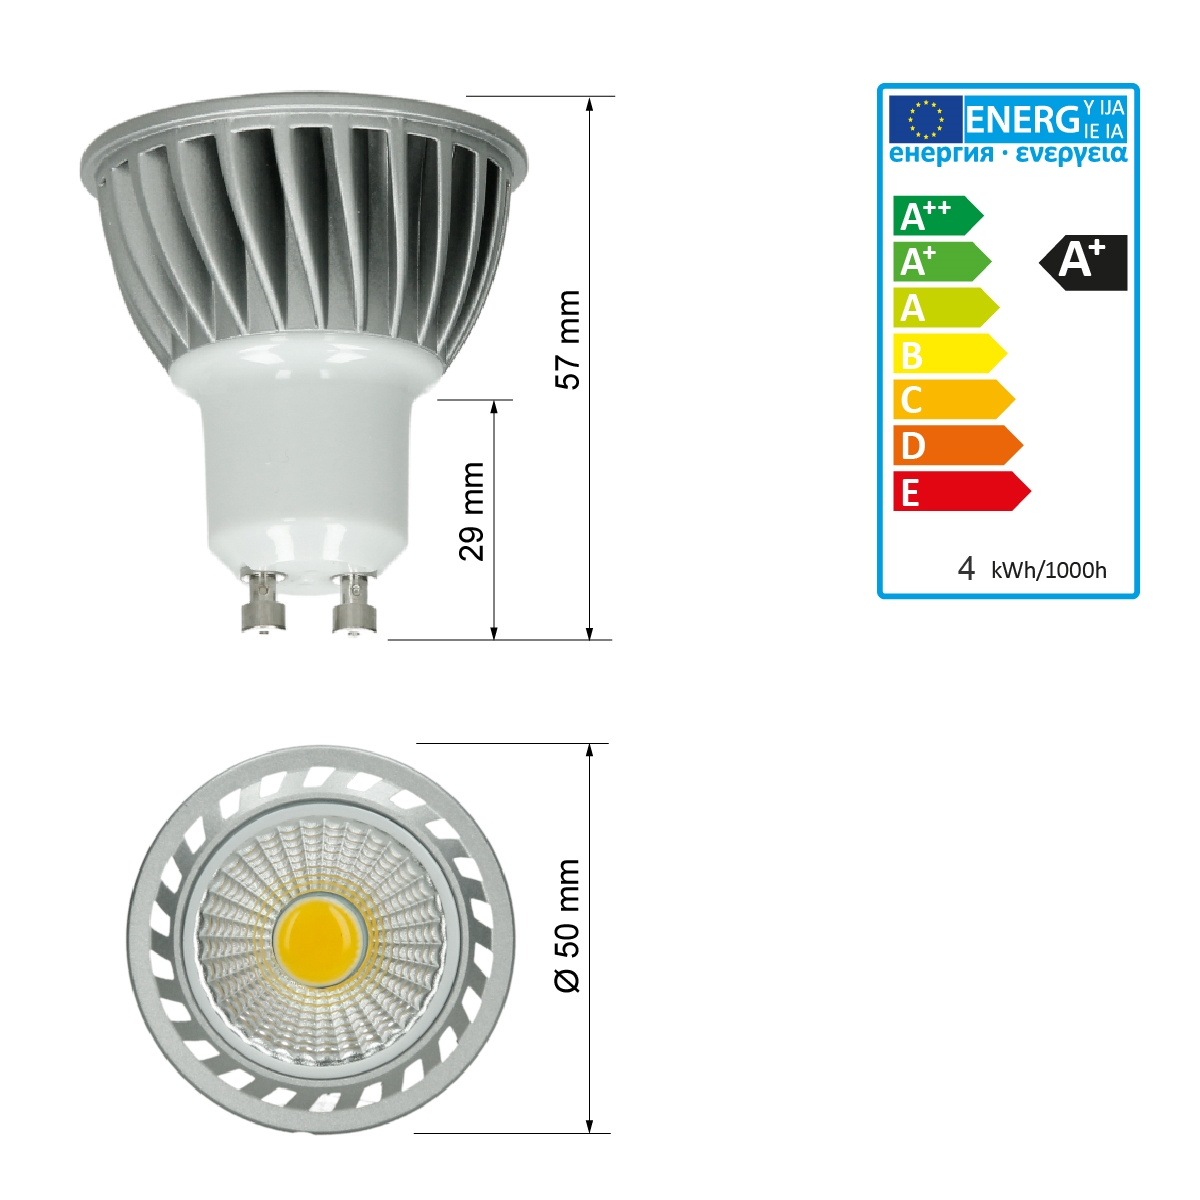 10 x mr16 LED Ampoules 5w COB kaltweiß 420lm projecteur ampoule spot 12v Lampe 